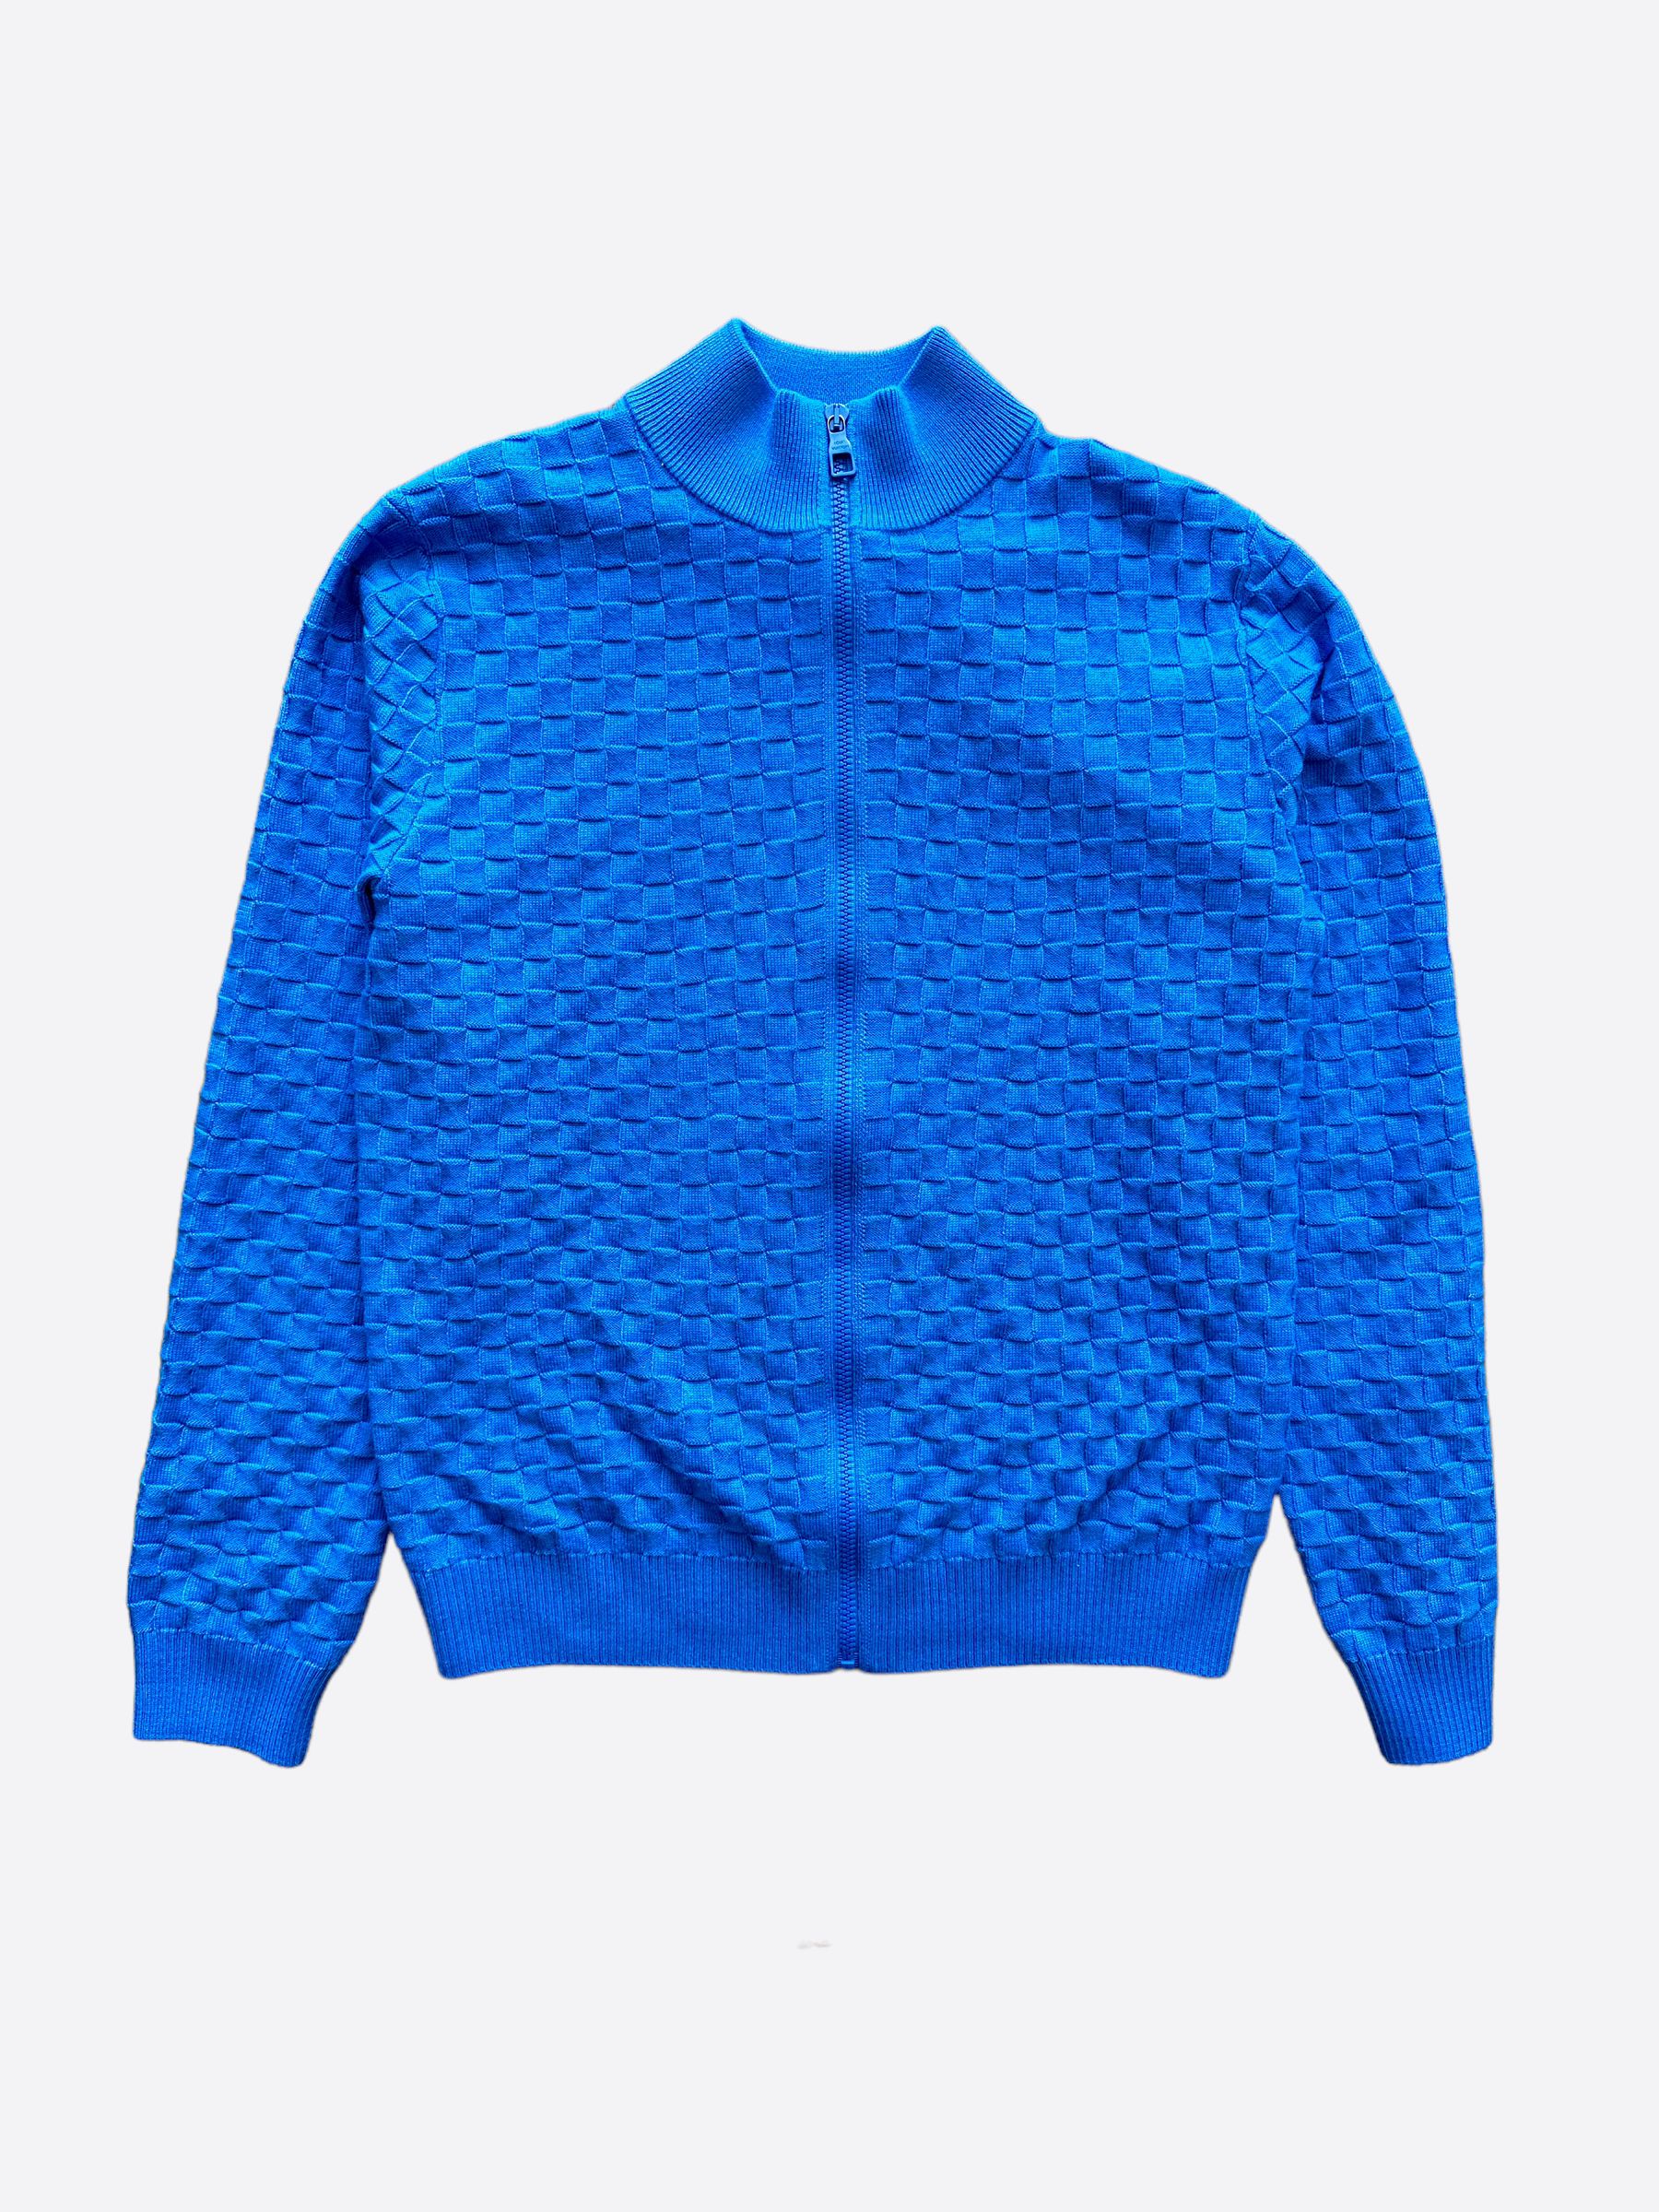 Louis Vuitton Louis Vuitton Varsity Jacket Blue A1 Condition, Grailed